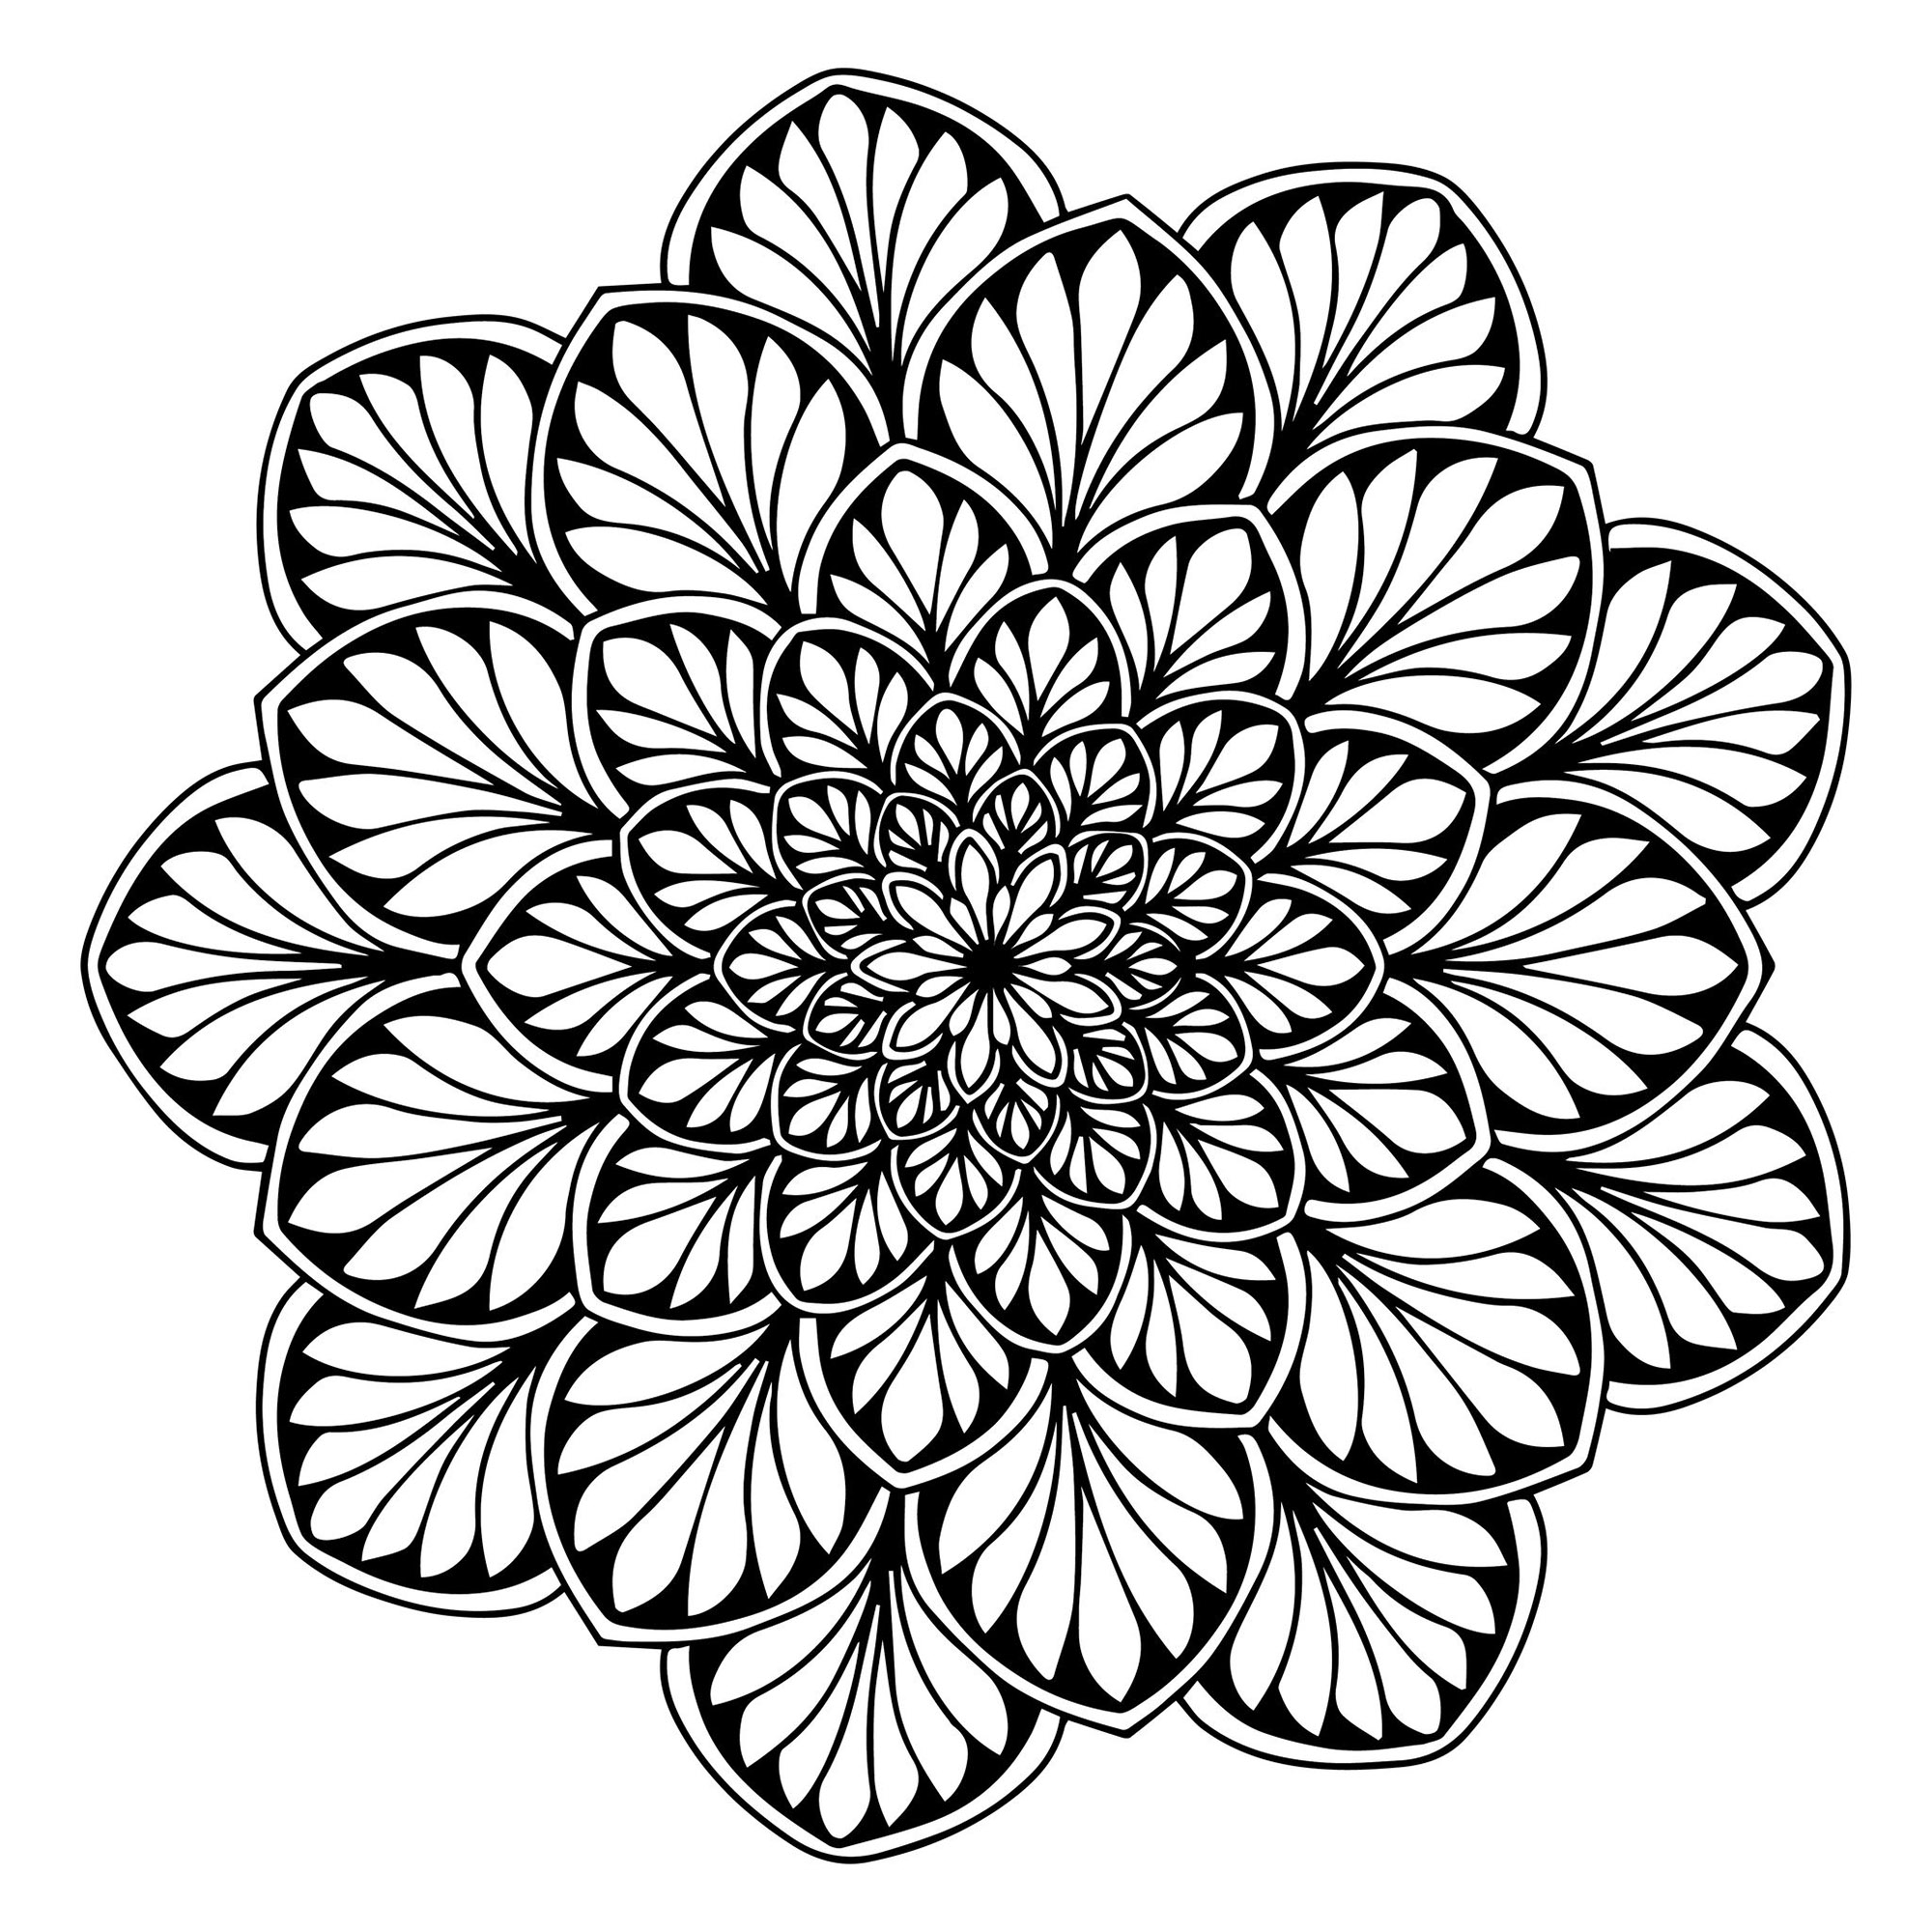 Mandala com folhas simétricas e regulares